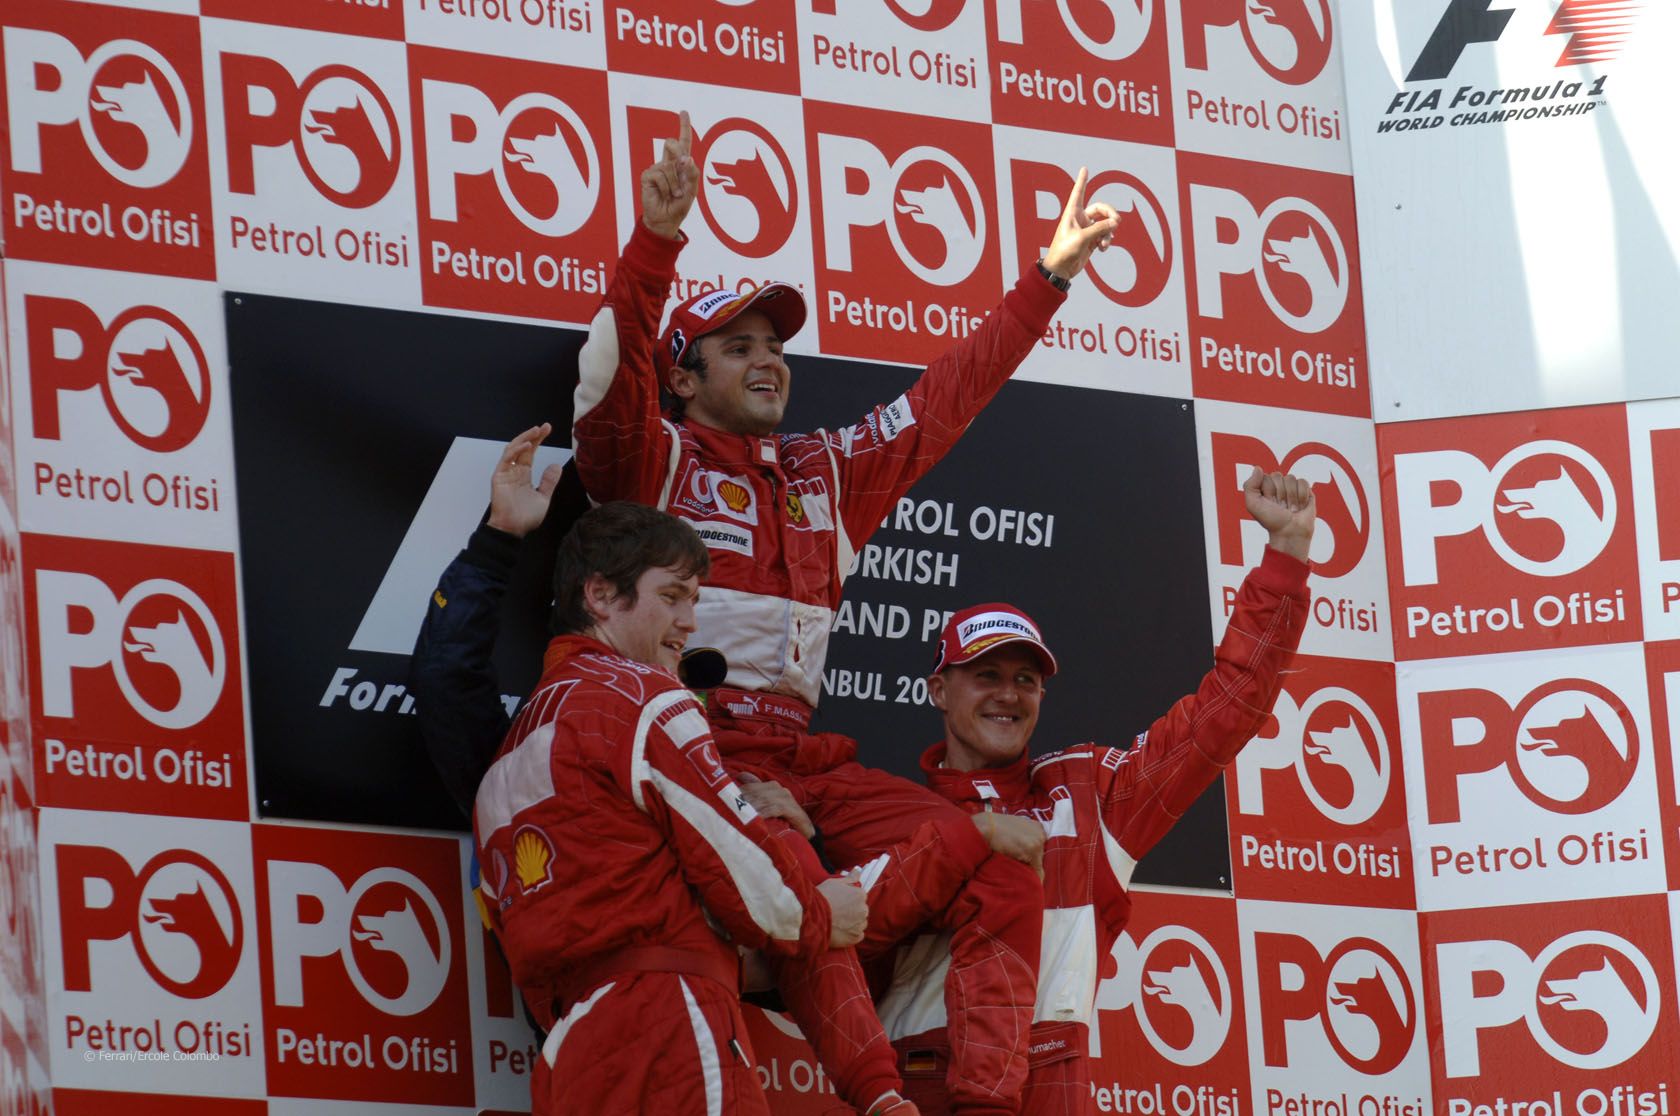 Felipe Massa viene sollevato in trionfo da Schumi, Smedley ed Alonso (coperto da quest'ultimo), sul podio del GP di Turchia 2006, prima vittoria del brasiliano in F1 (foto da: f1fanatic.co.uk)